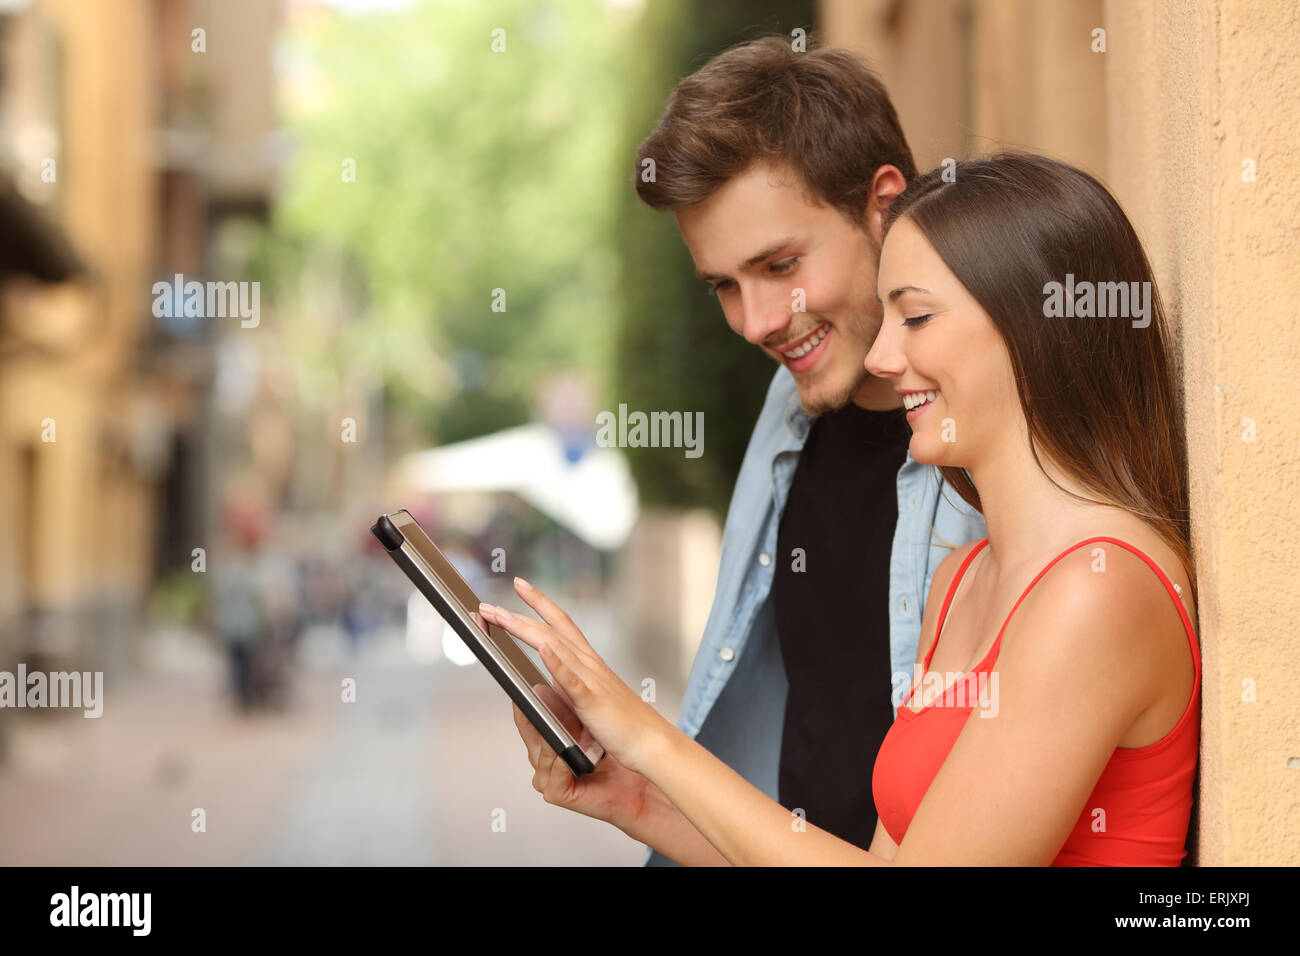 Profil von einem glücklichen Paar eine Tablette auf der Straße Surfen Stockfoto